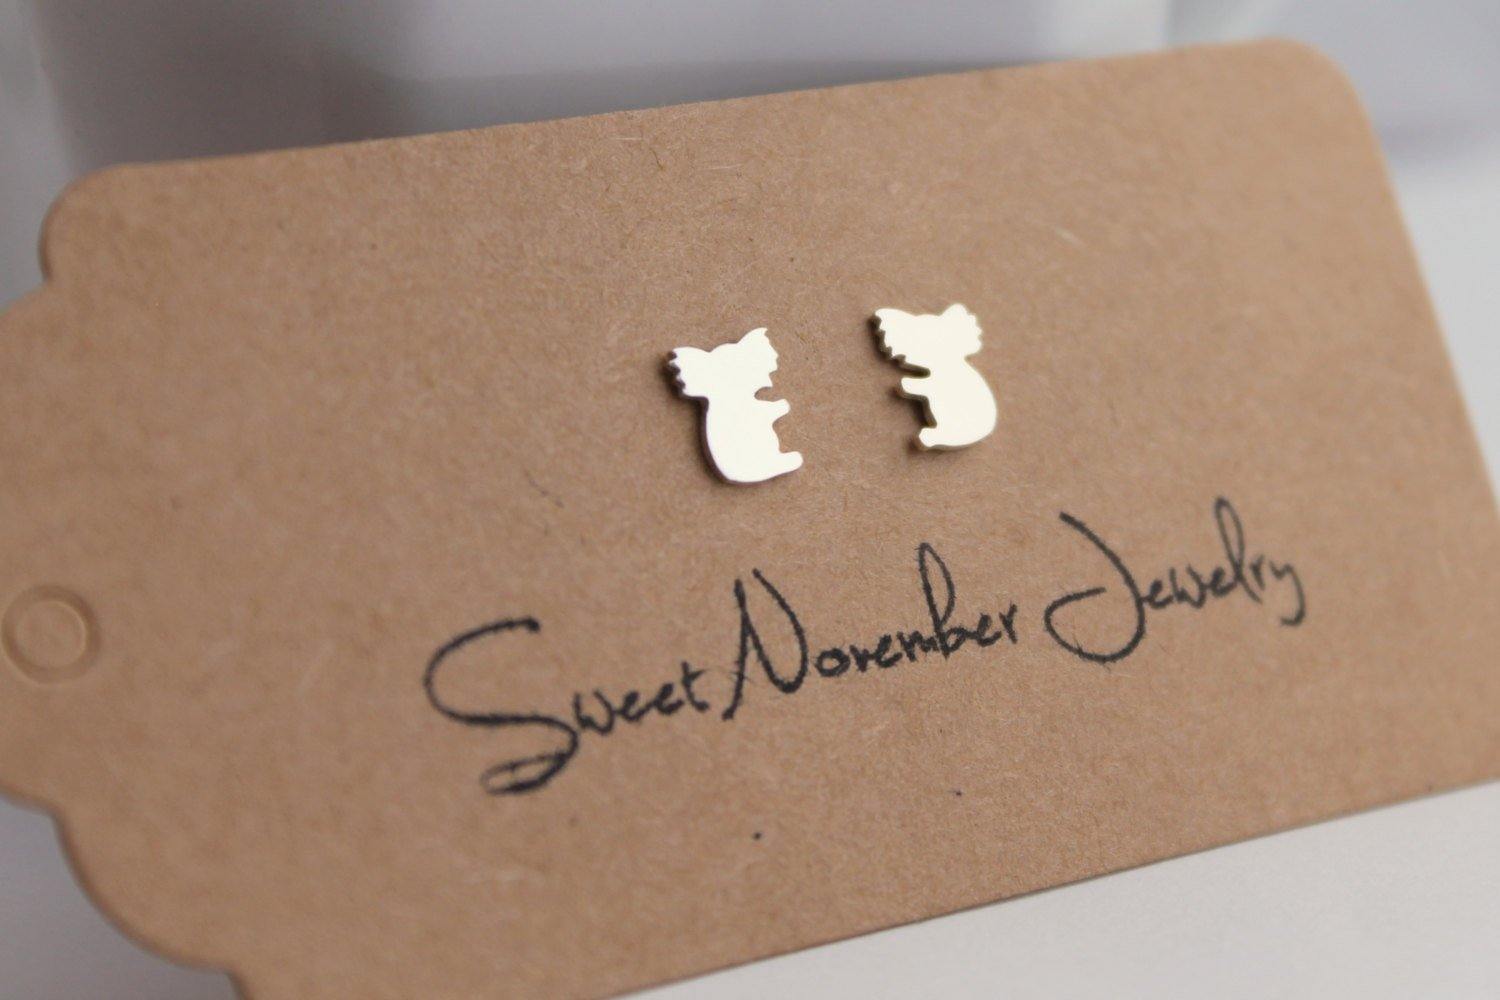 Koala Earrings, Sterling Silver Post Earrings, Australian Native Animal Earrings - Sweet November Jewelry